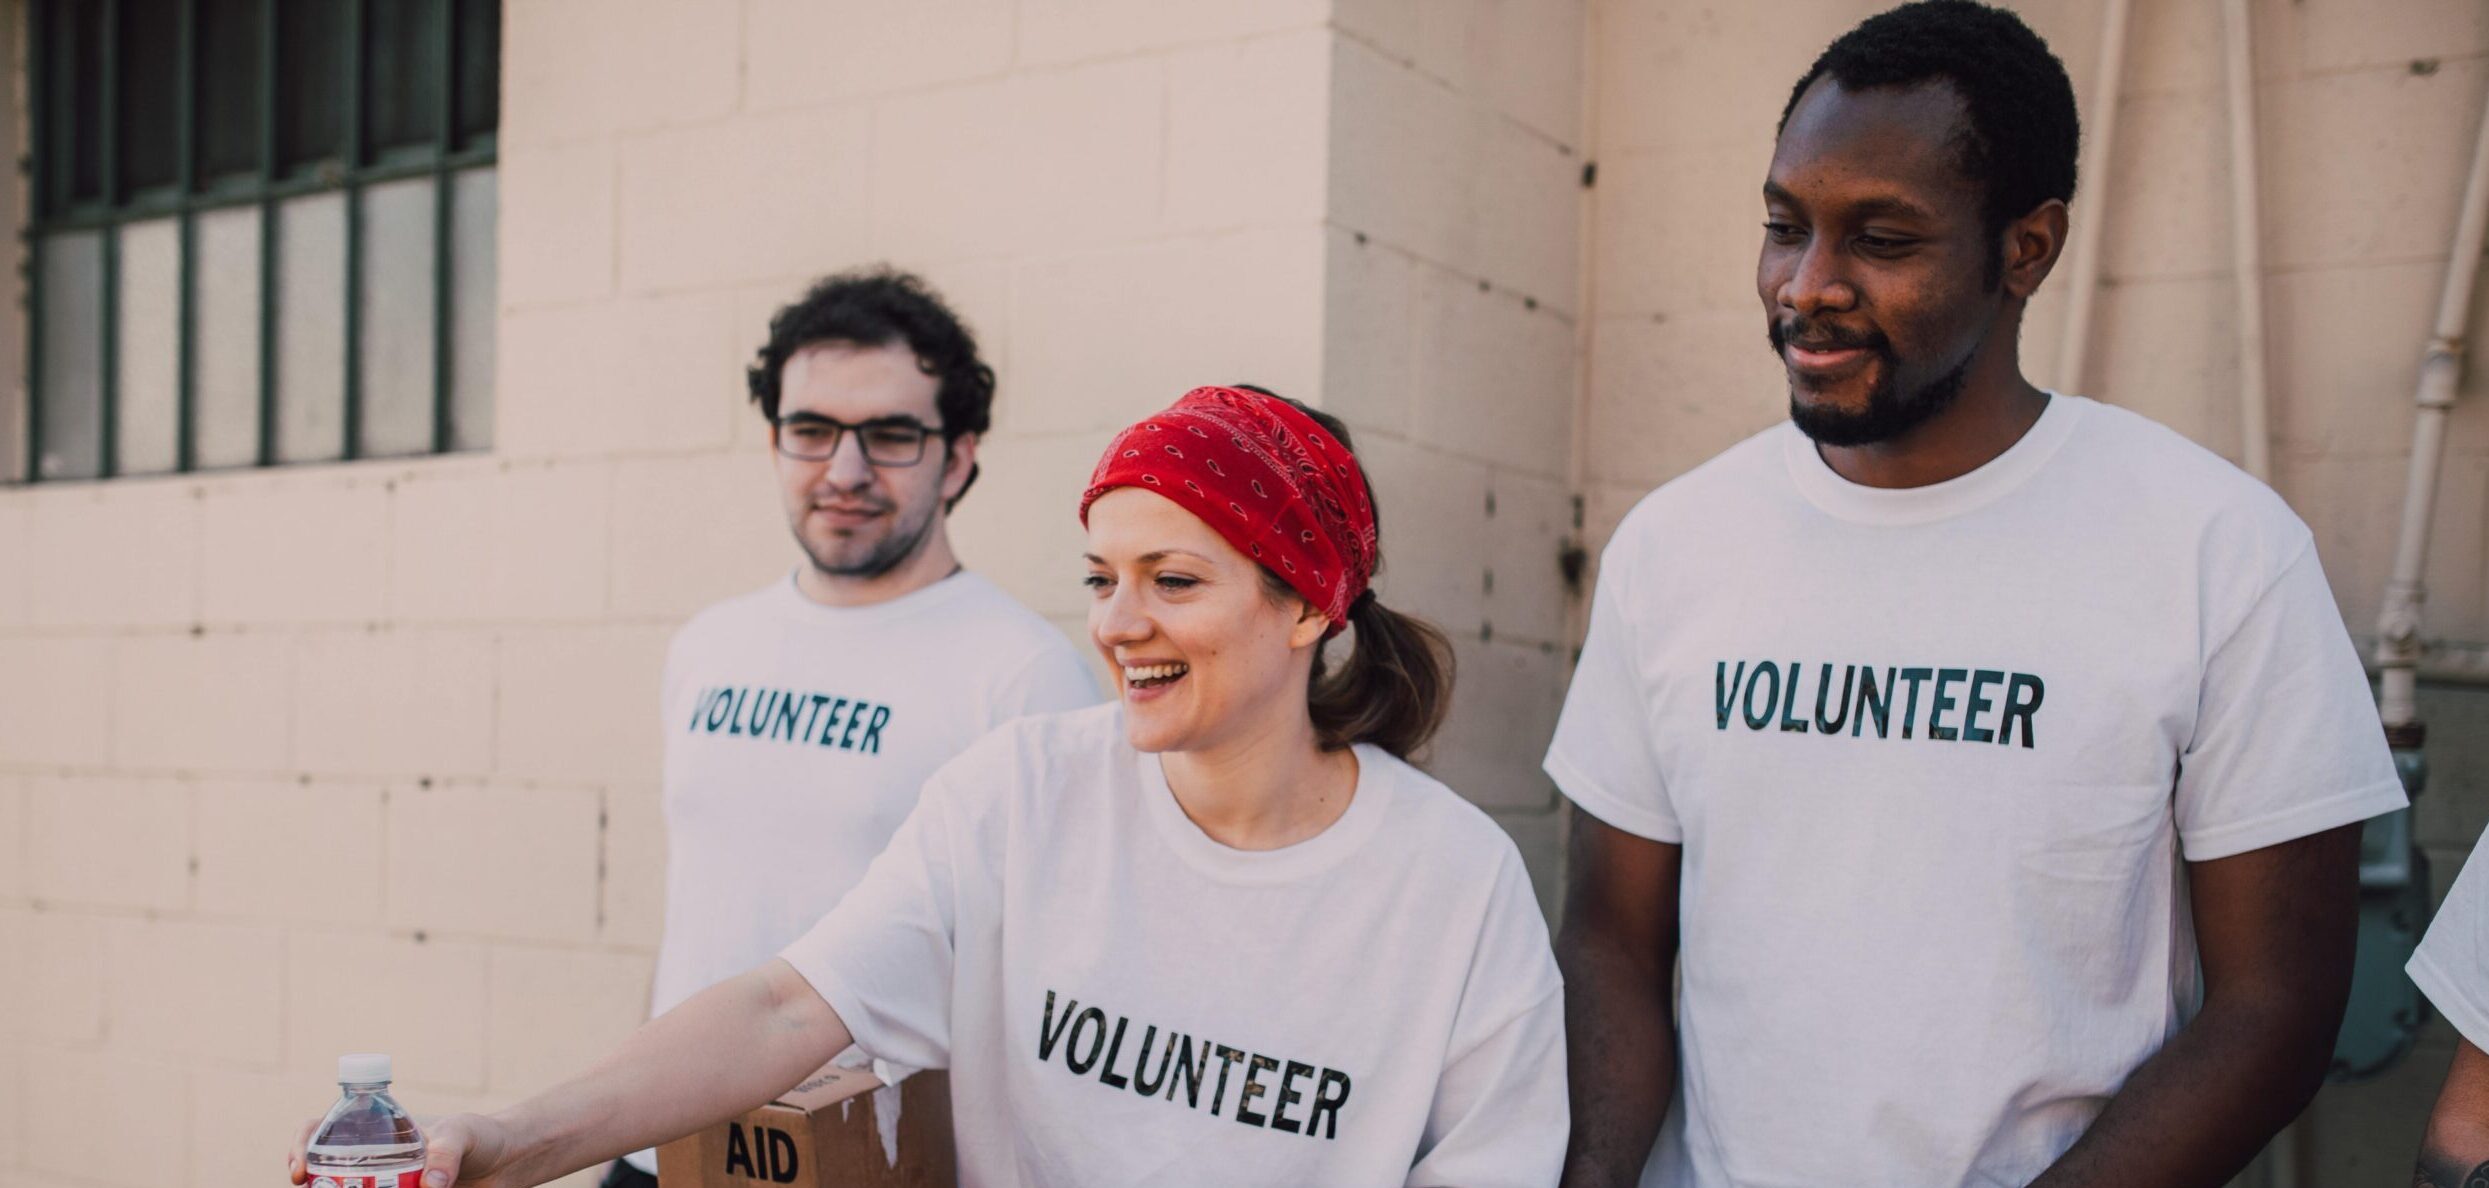 Volunteering brings great benefits. Three volunteers in t-shirts